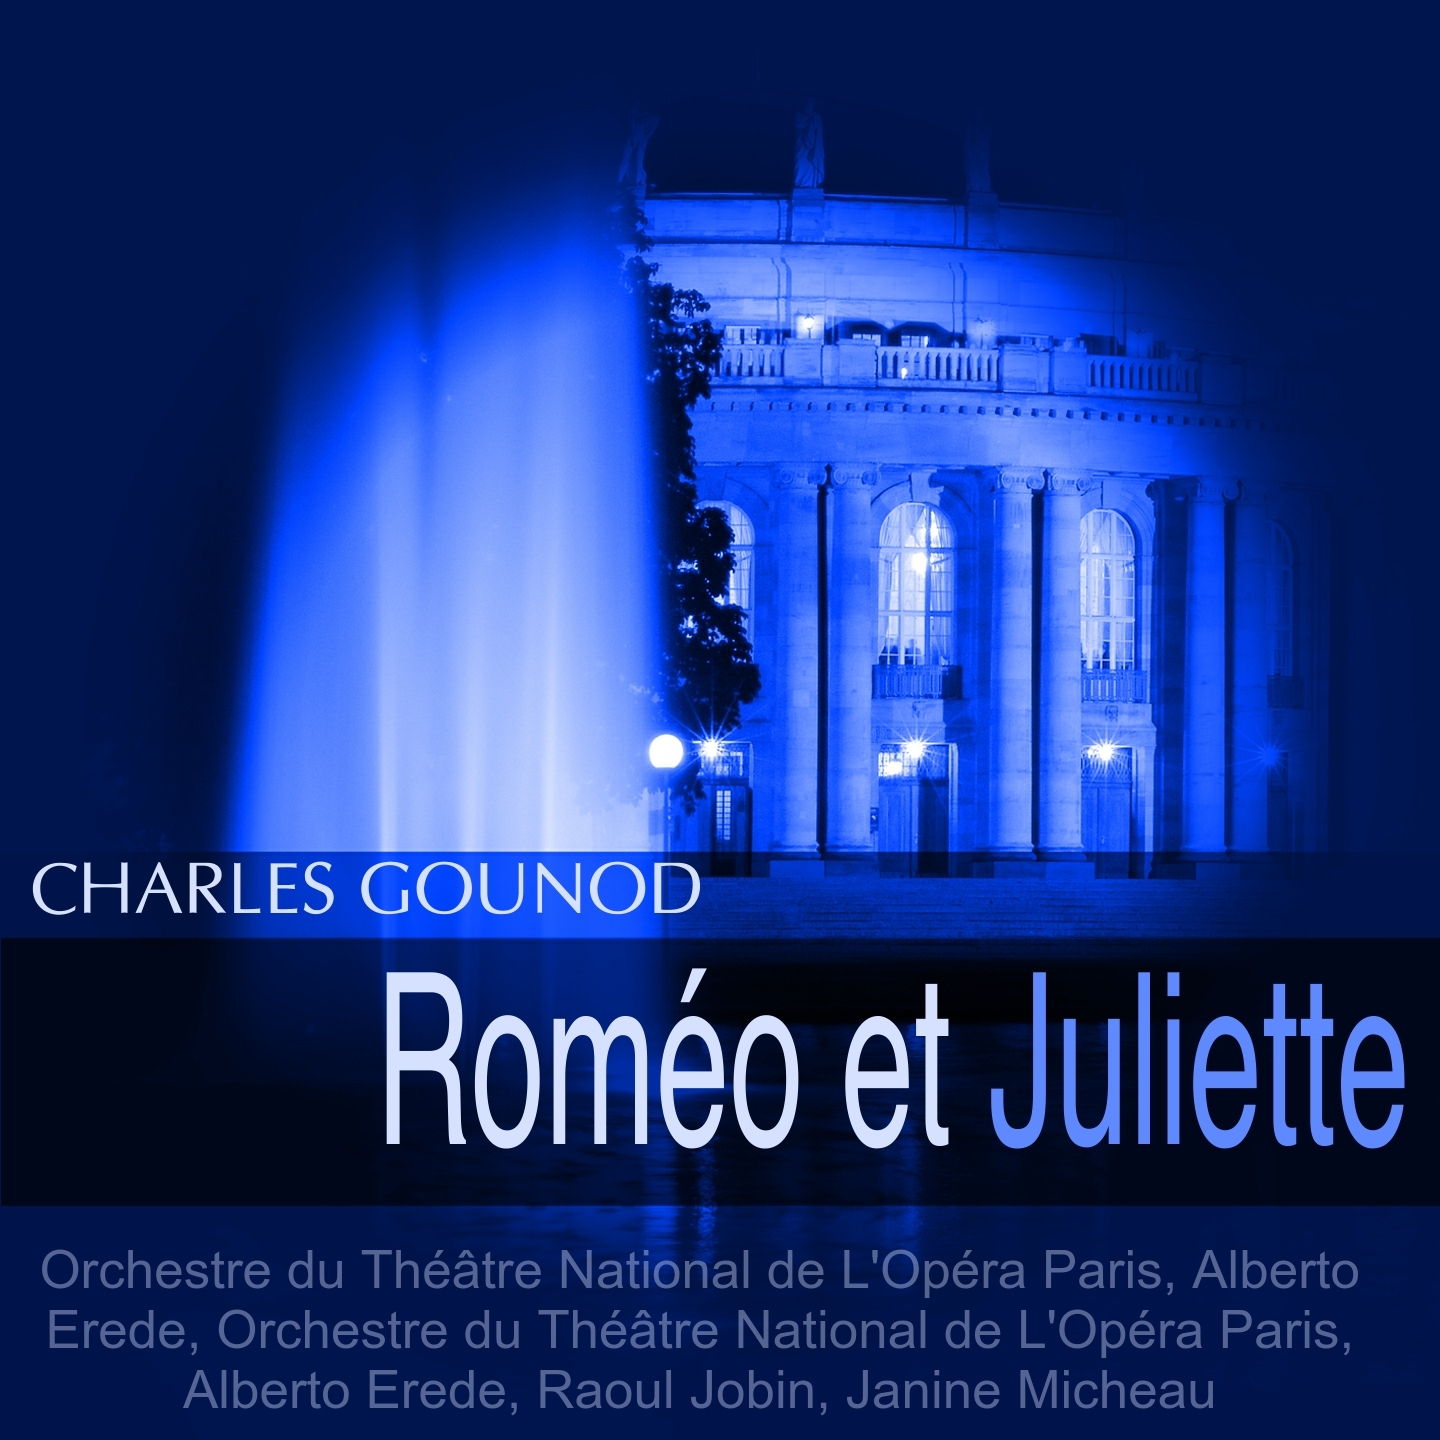 Rome o et Juliette, Act I: " L' heure s' envole" Ch urs